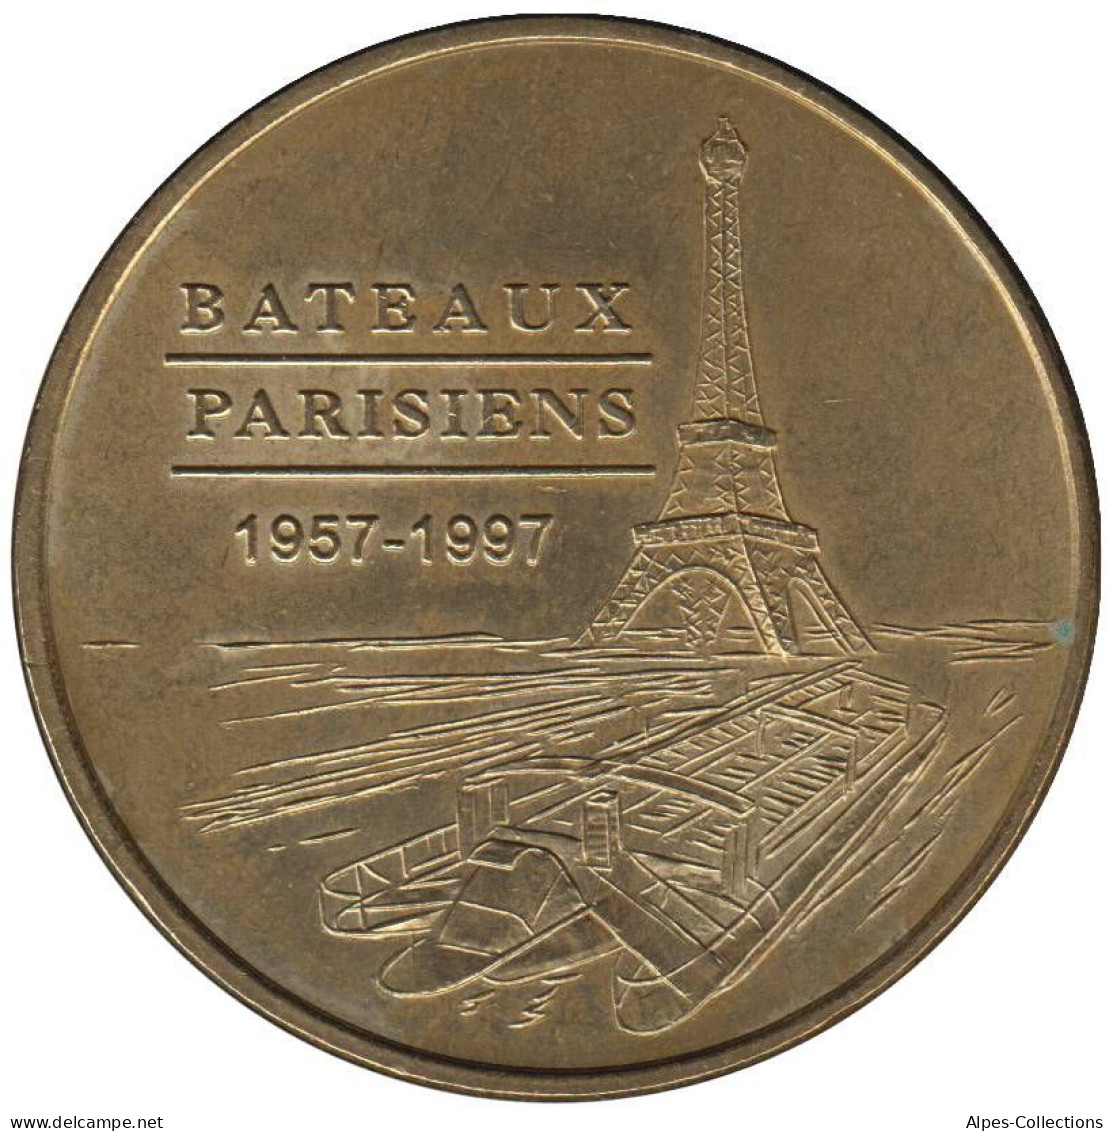 75-0251 - JETON TOURISTIQUE MDP - Bateaux Parisiens - 1957-1997 - 1998.1 - Zonder Datum